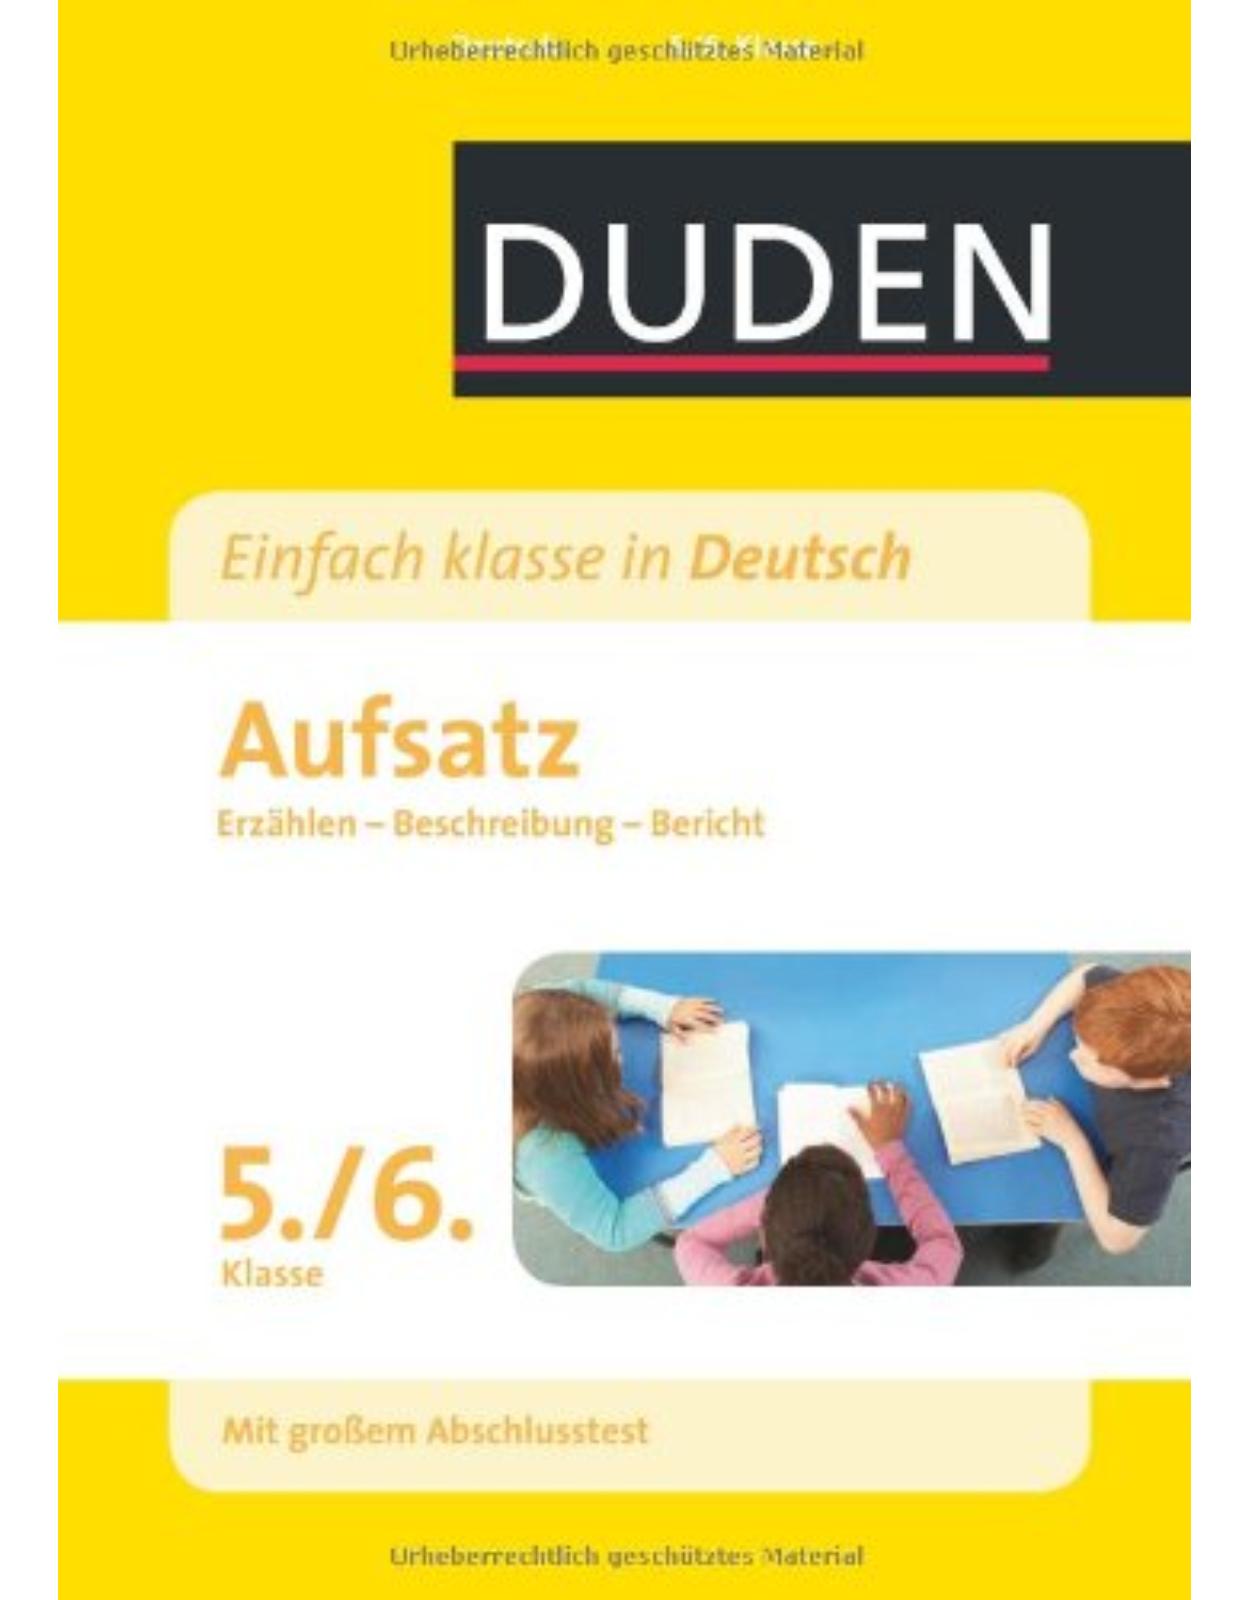 Duden - Einfach klasse in Deutsch: Aufsatz 5./6. Klasse: Erzählen, Beschreibung, Bericht Wissen - Üben - Testen